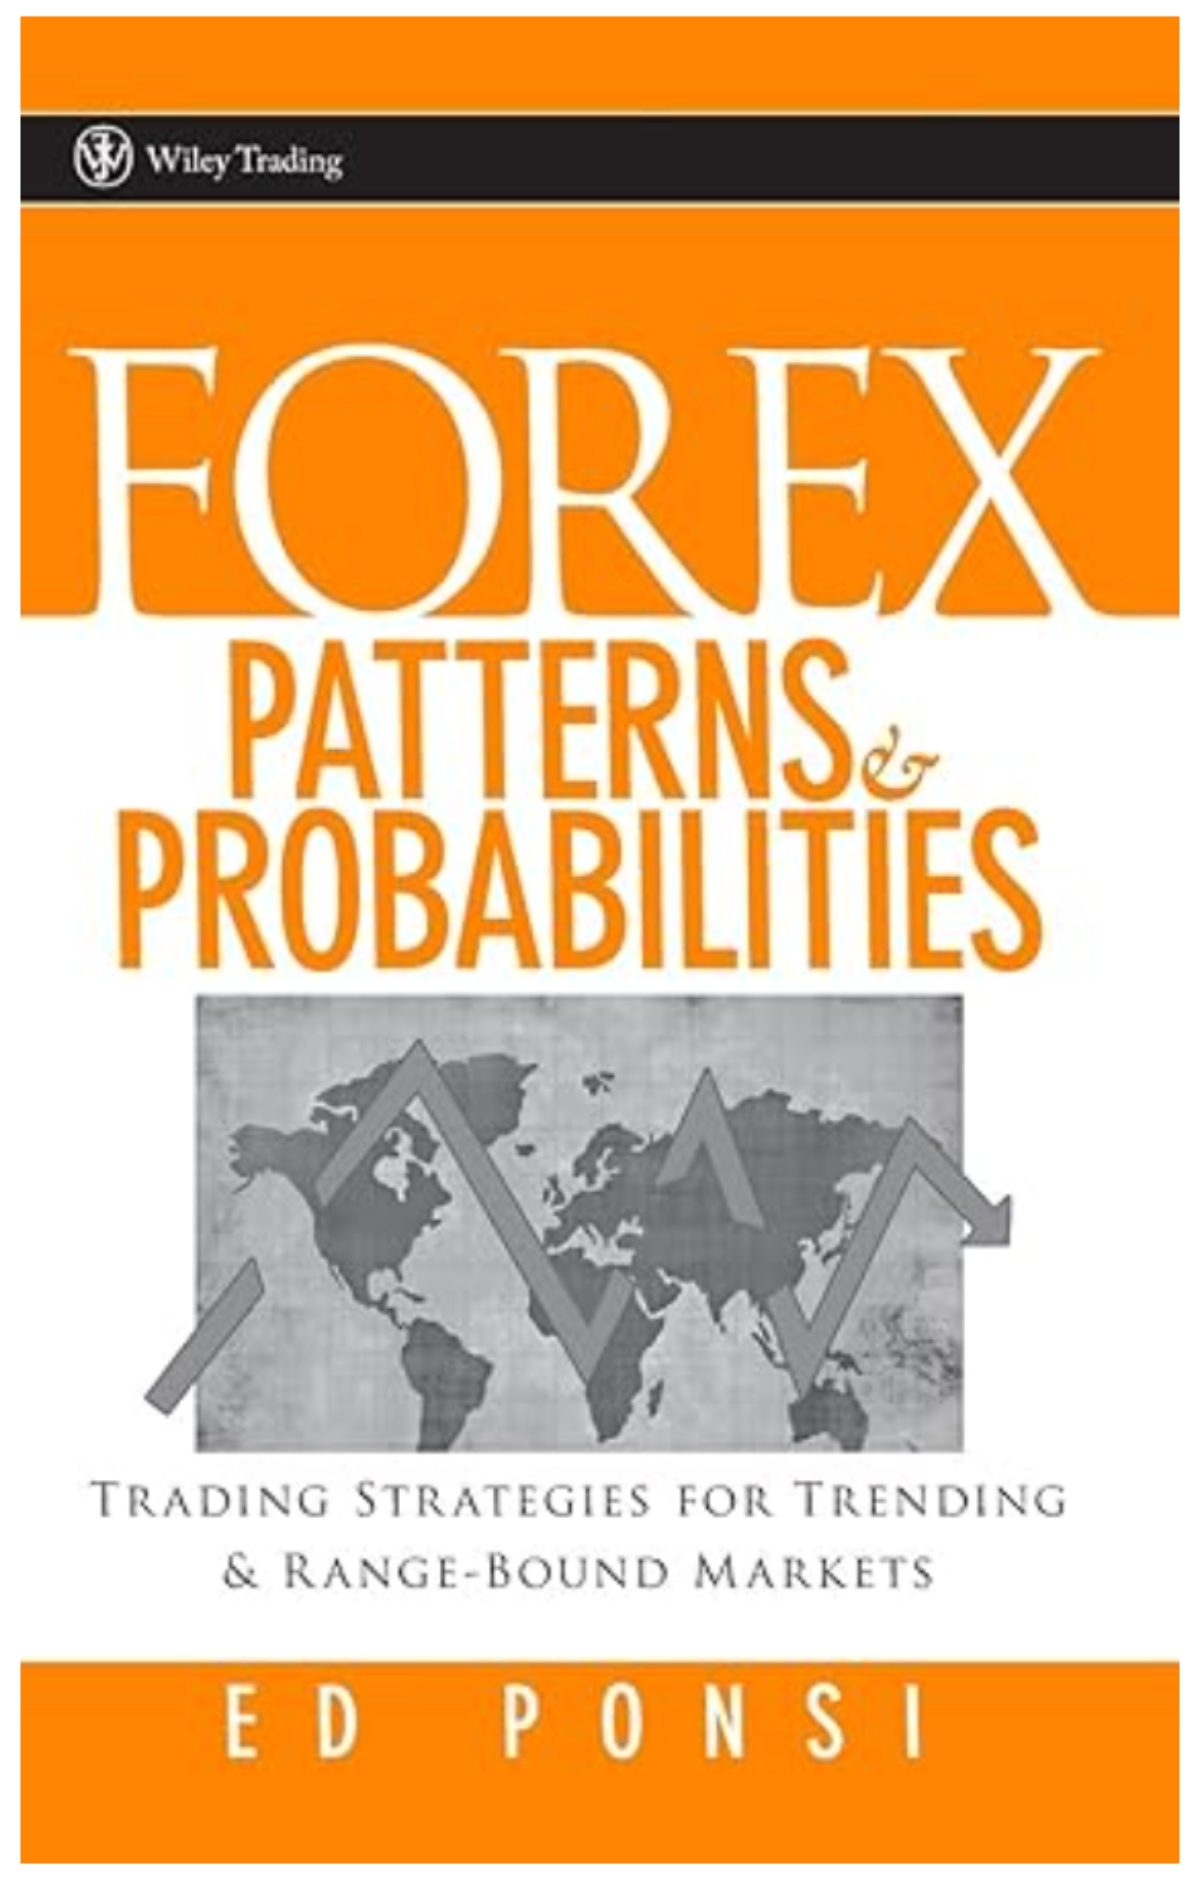 Book on understanding forex patterns